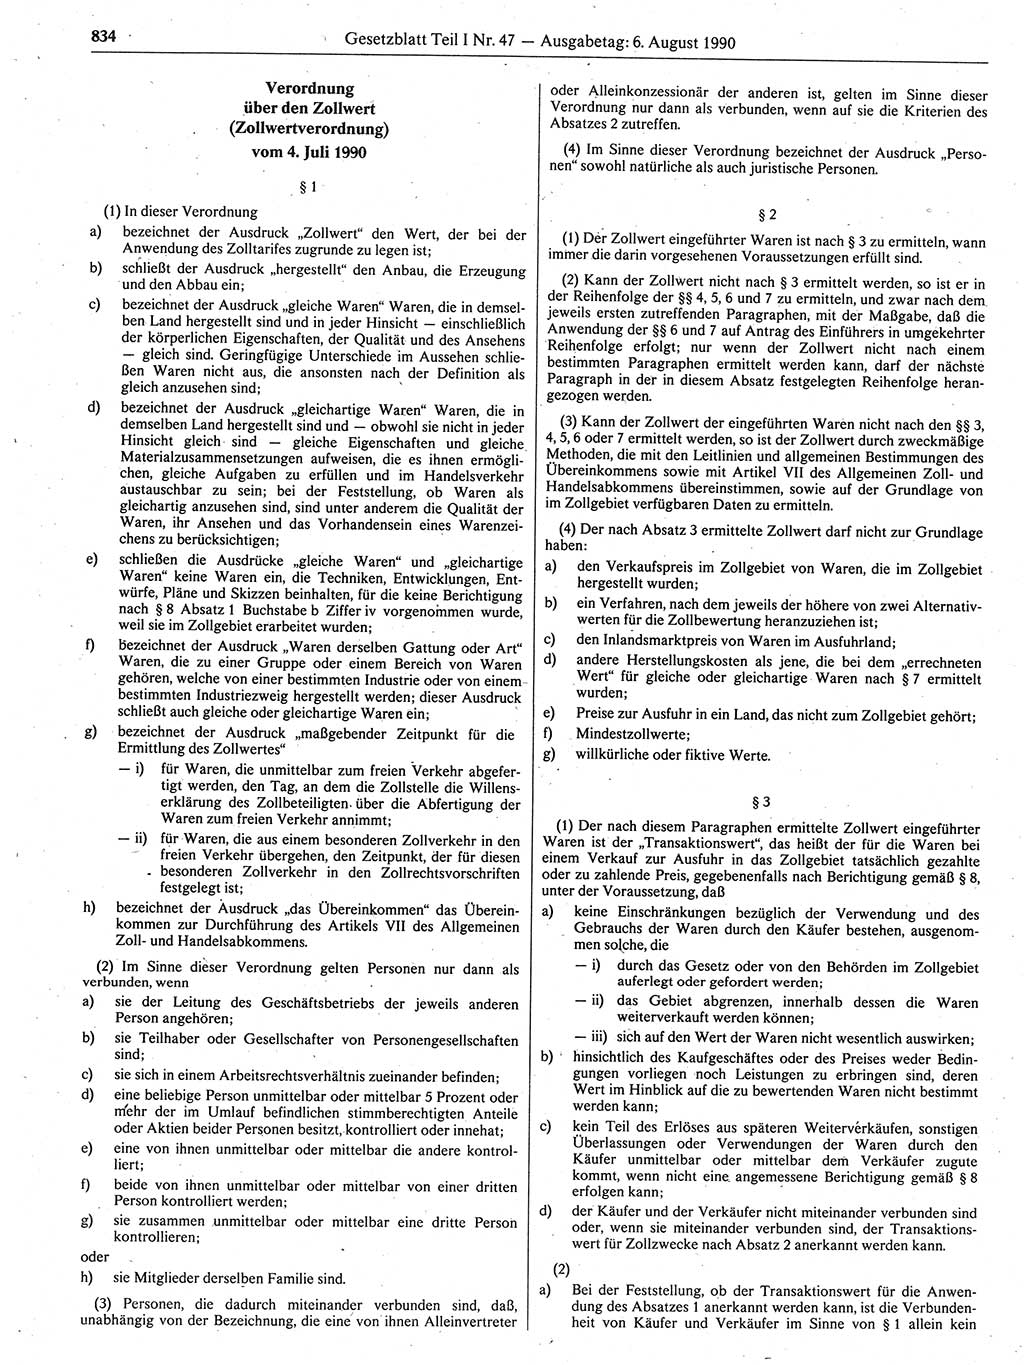 Gesetzblatt (GBl.) der Deutschen Demokratischen Republik (DDR) Teil Ⅰ 1990, Seite 834 (GBl. DDR Ⅰ 1990, S. 834)